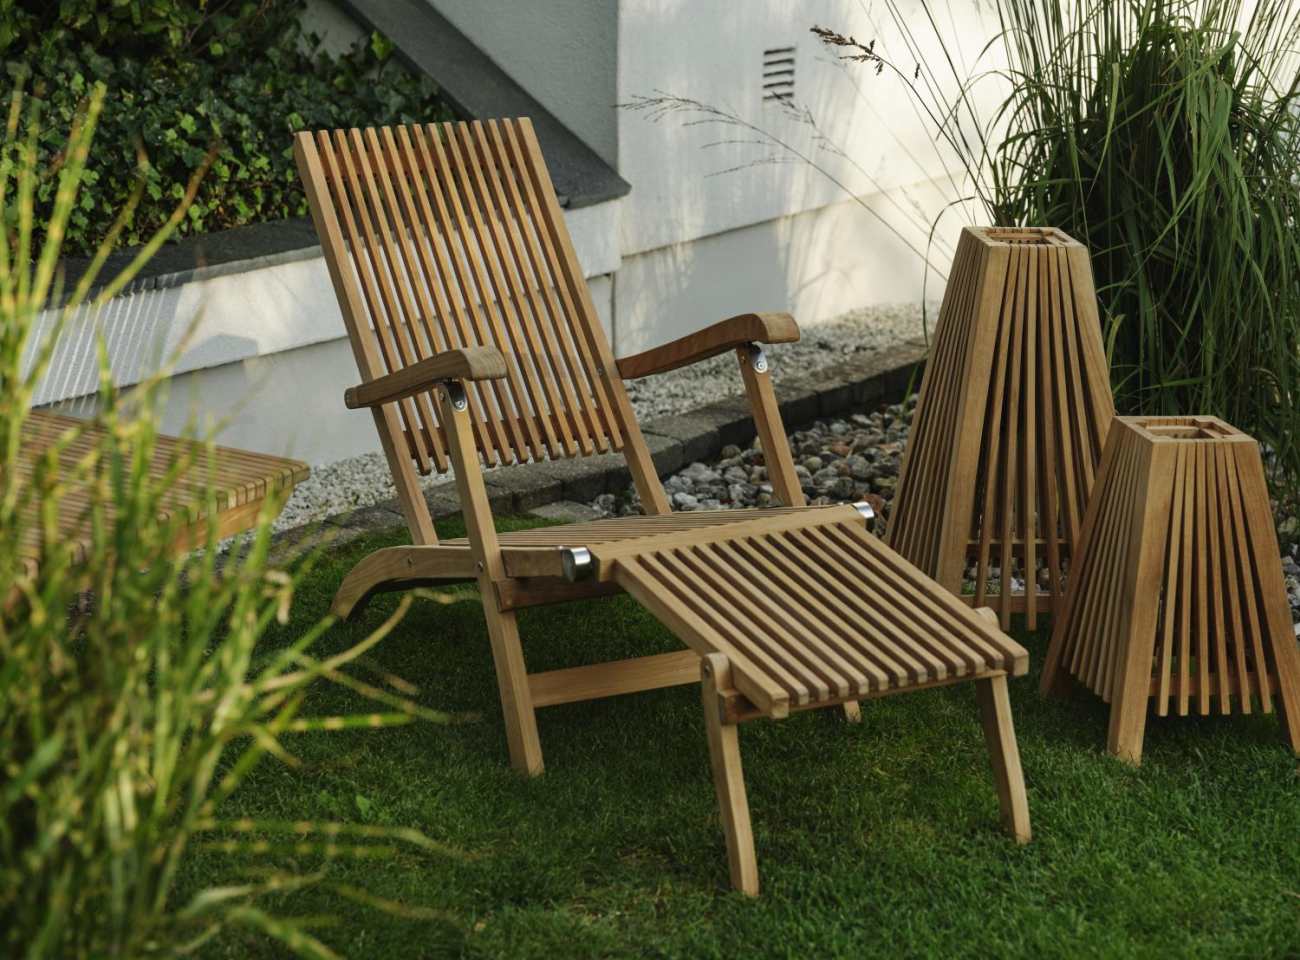 Der Liegestuhl Julita überzeugt mit seinem modernen Design. Gefertigt wurde er aus Teakholz, welches einen natürlichen Farbton besitzt. Das Gestell ist auch aus Teakholz und hat eine natürliche Farbe. Die Sitzhöhe des Stuhls beträgt 34 cm.